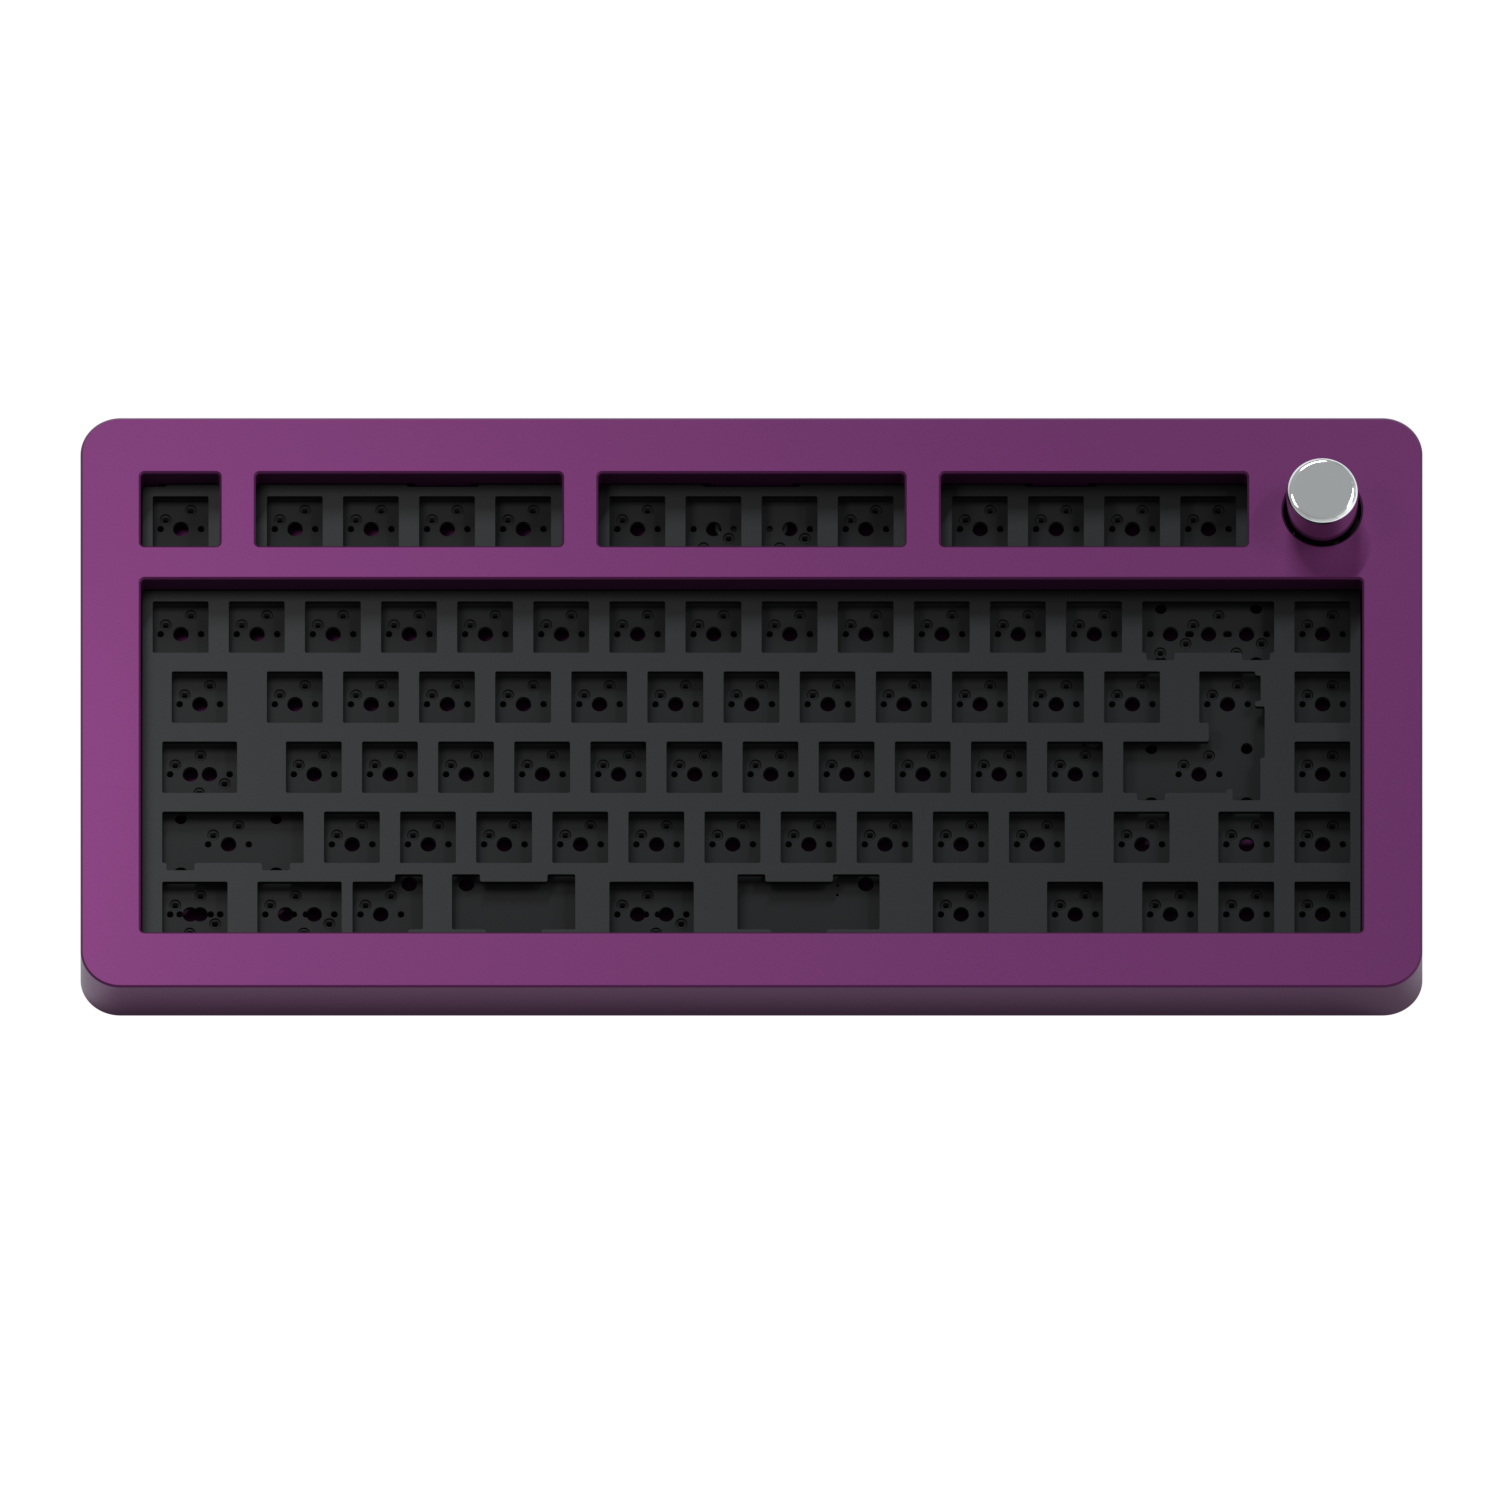 Paragon Keyboard